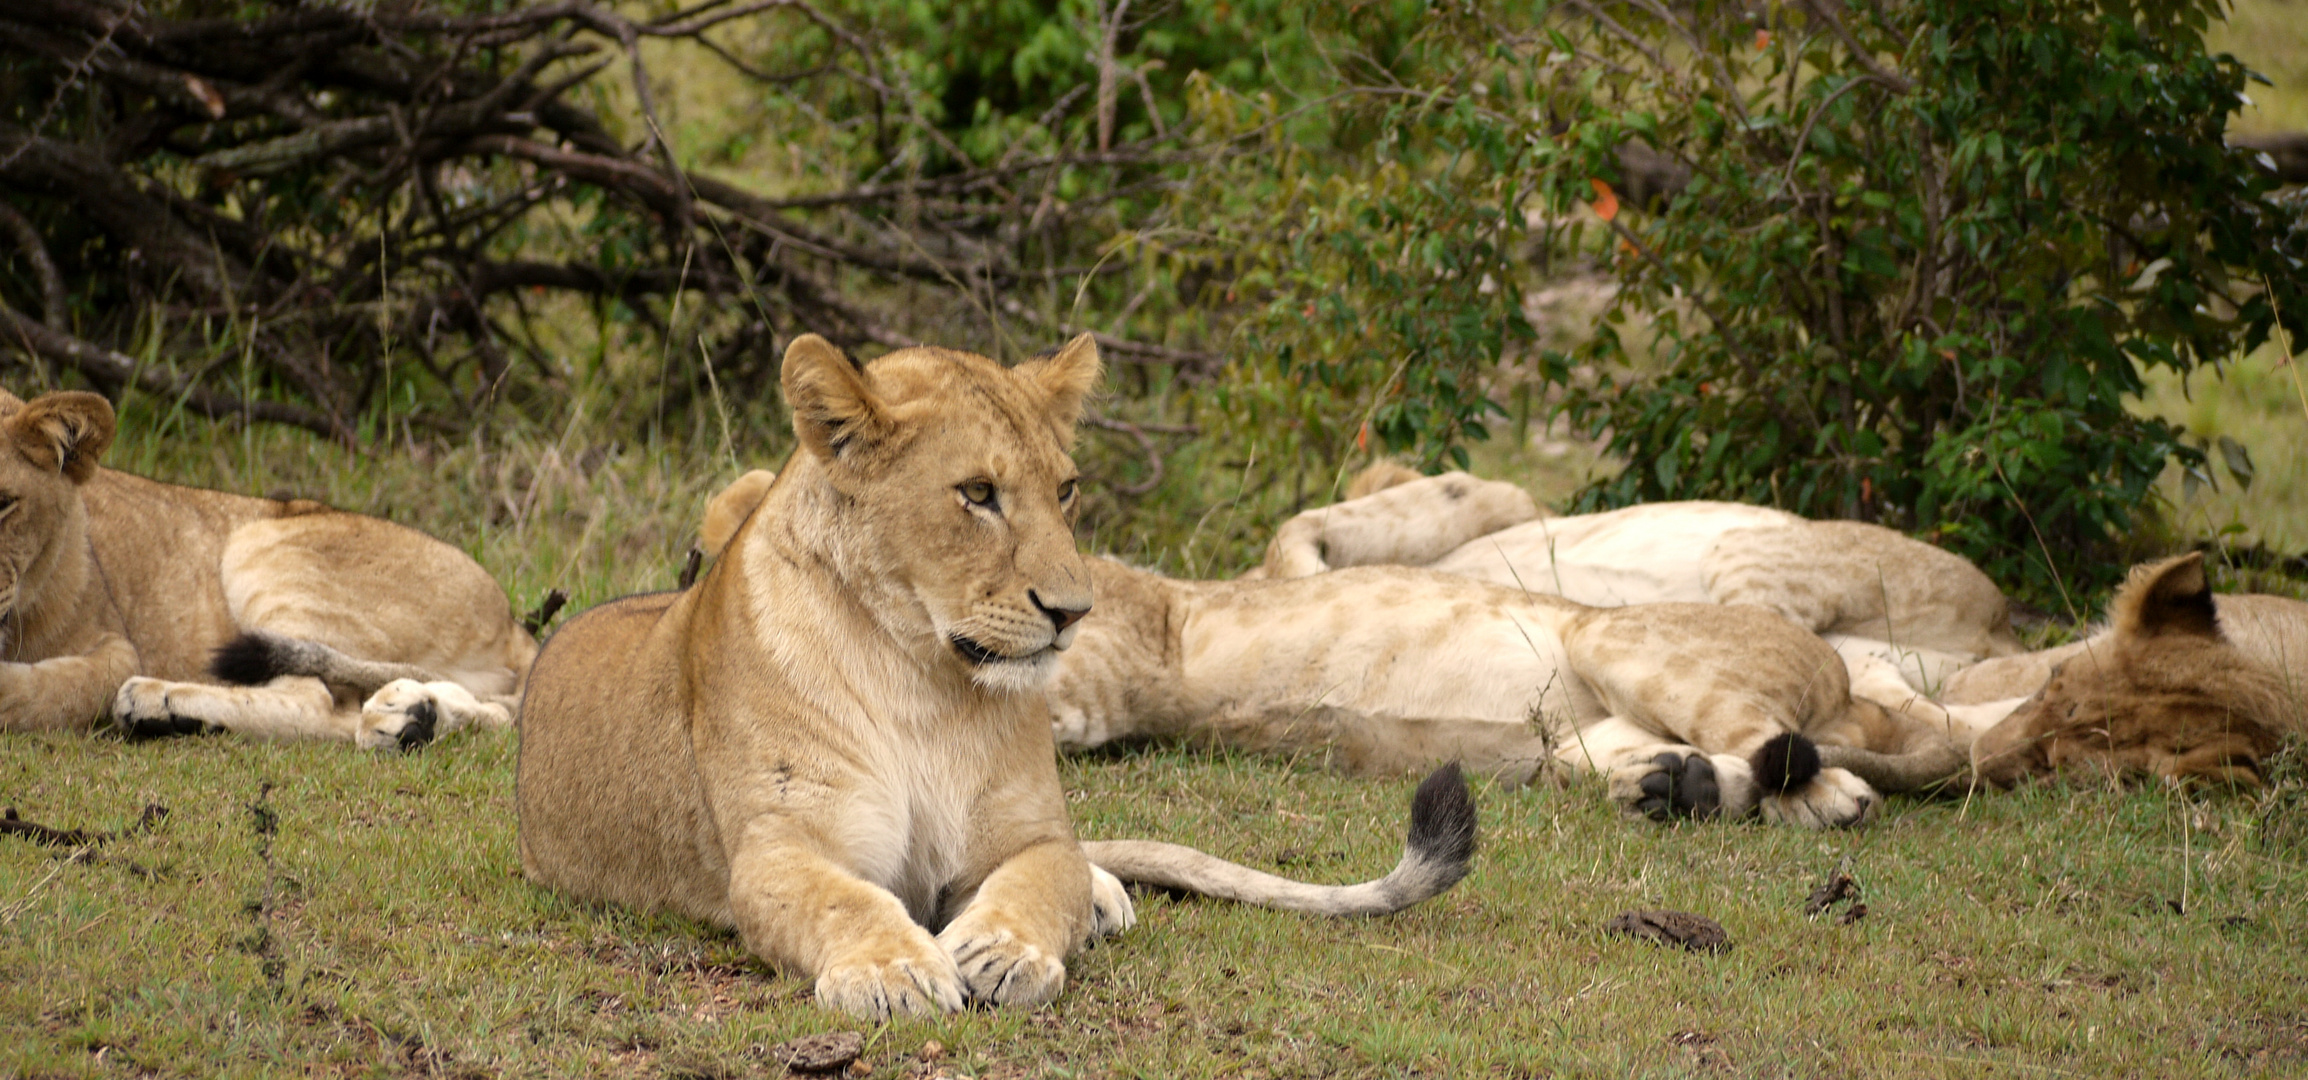 Löwen im Schutzgebiet, Masai Mara